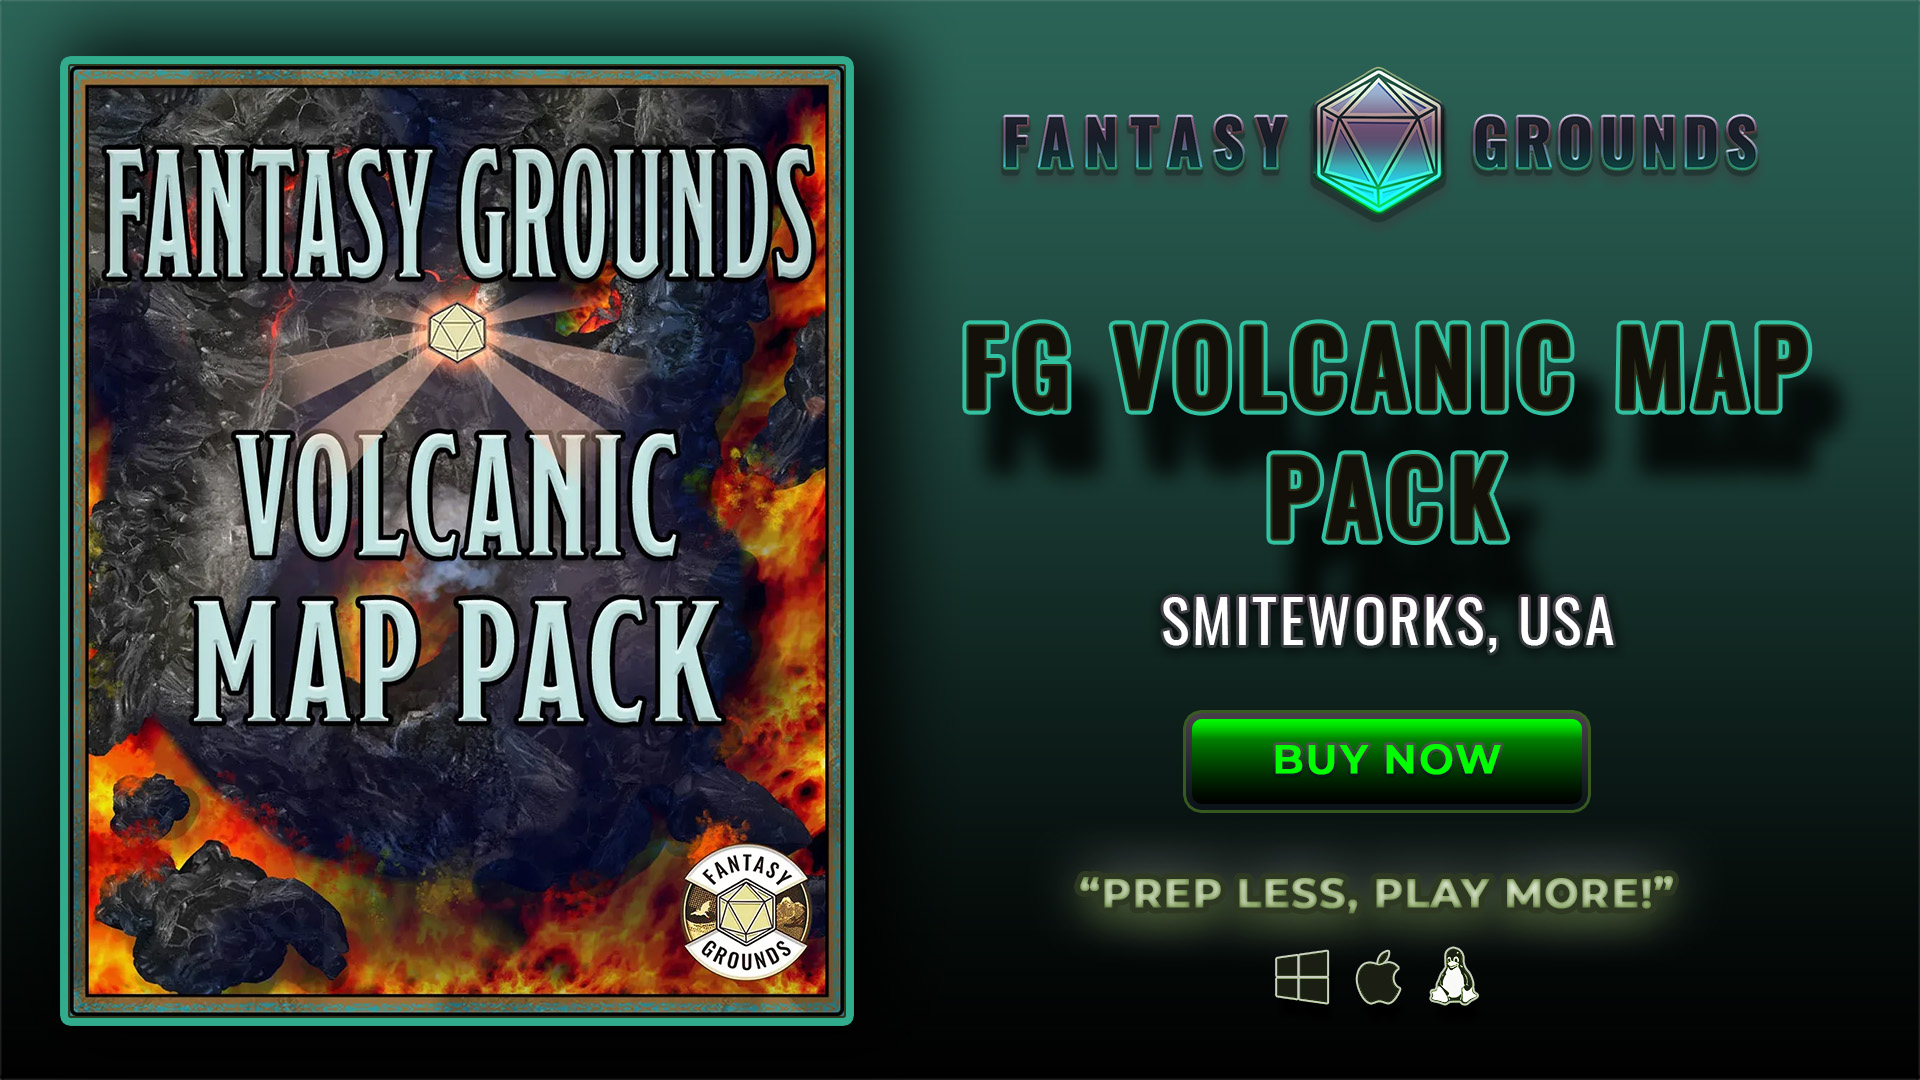 FG Volcanic Map Pack (SWKARTPACKVOLCANIC).jpg